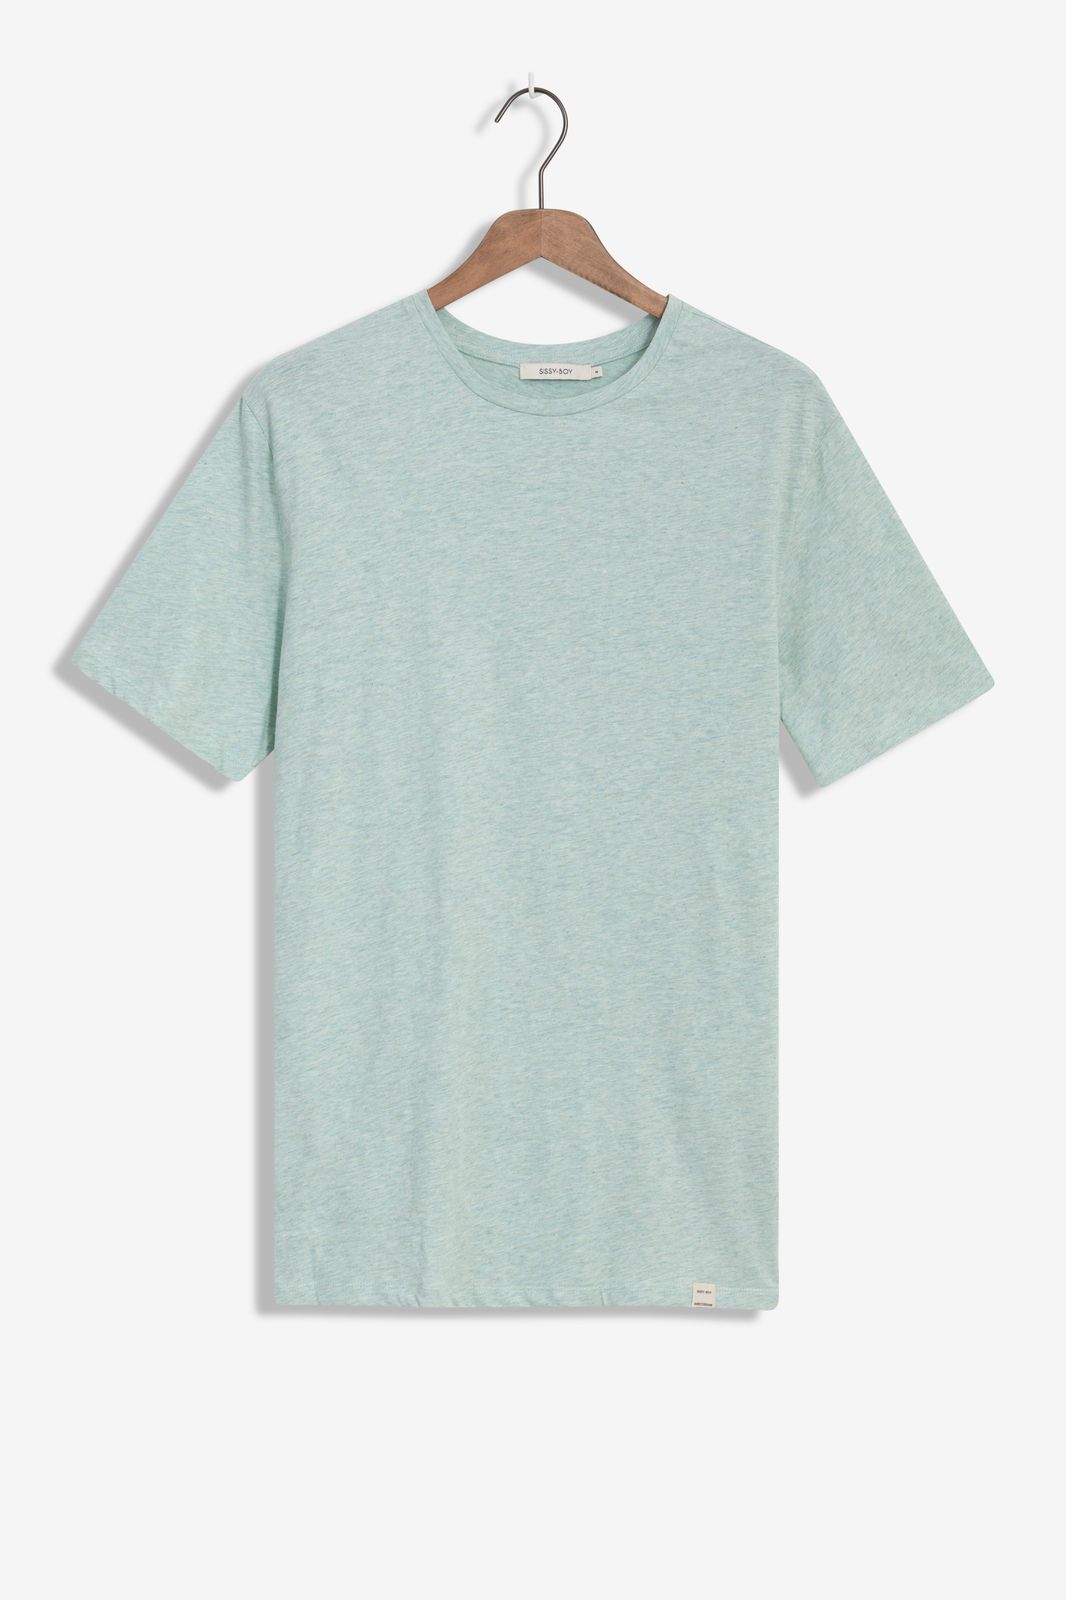 Meliertes Baumwoll-Shirt - hellgrün